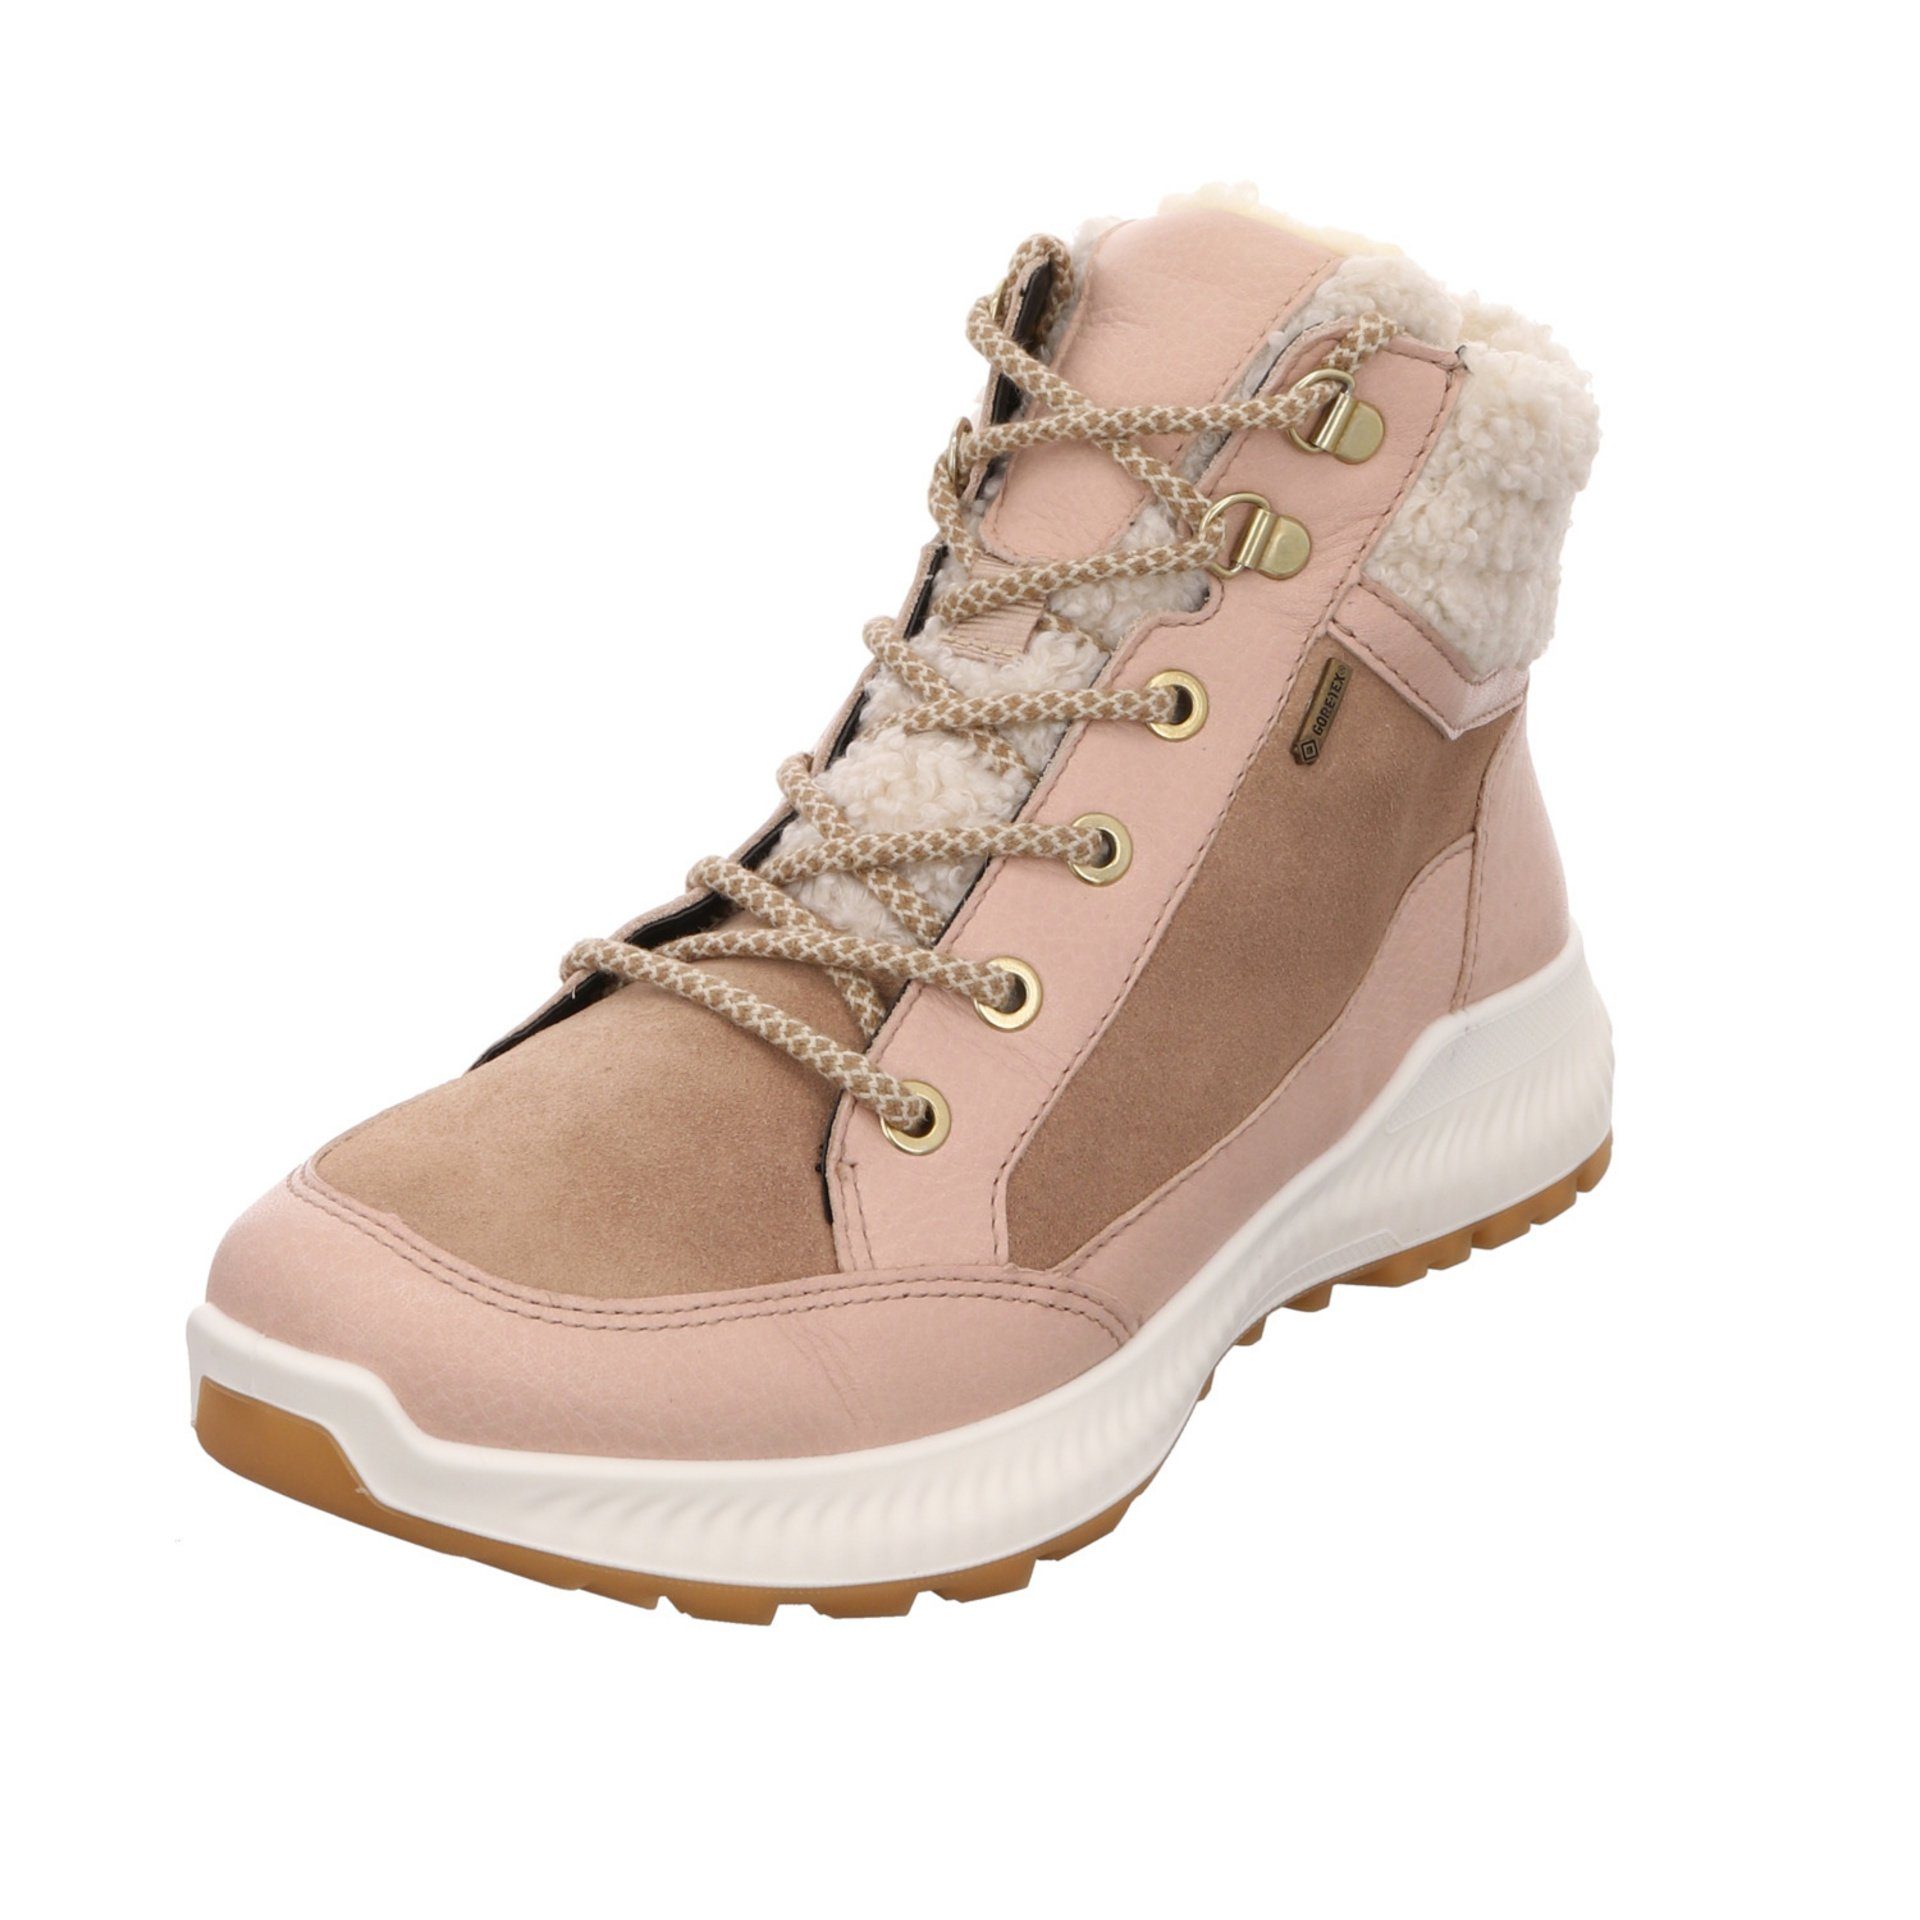 Ara Damen Stiefel Schuhe Hiker Boots Elegant Freizeit Stiefelette Leder-/Textilkombination beige 046744